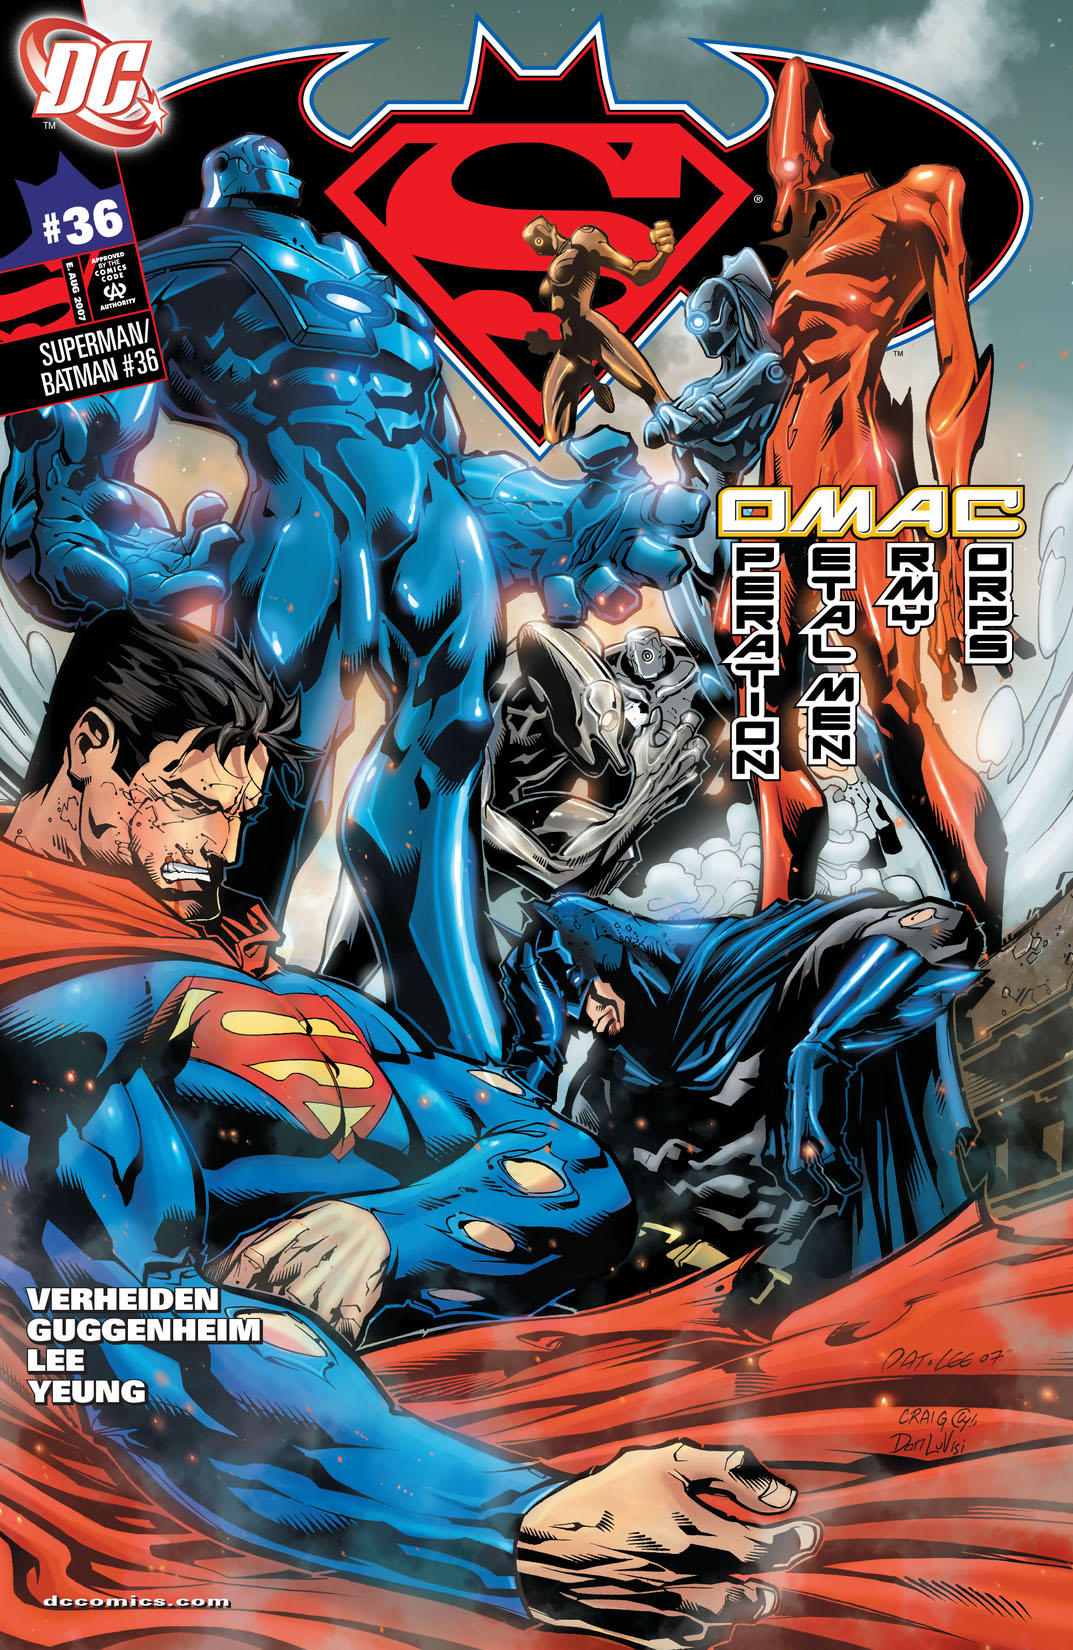 Superman/Batman #36 preview images